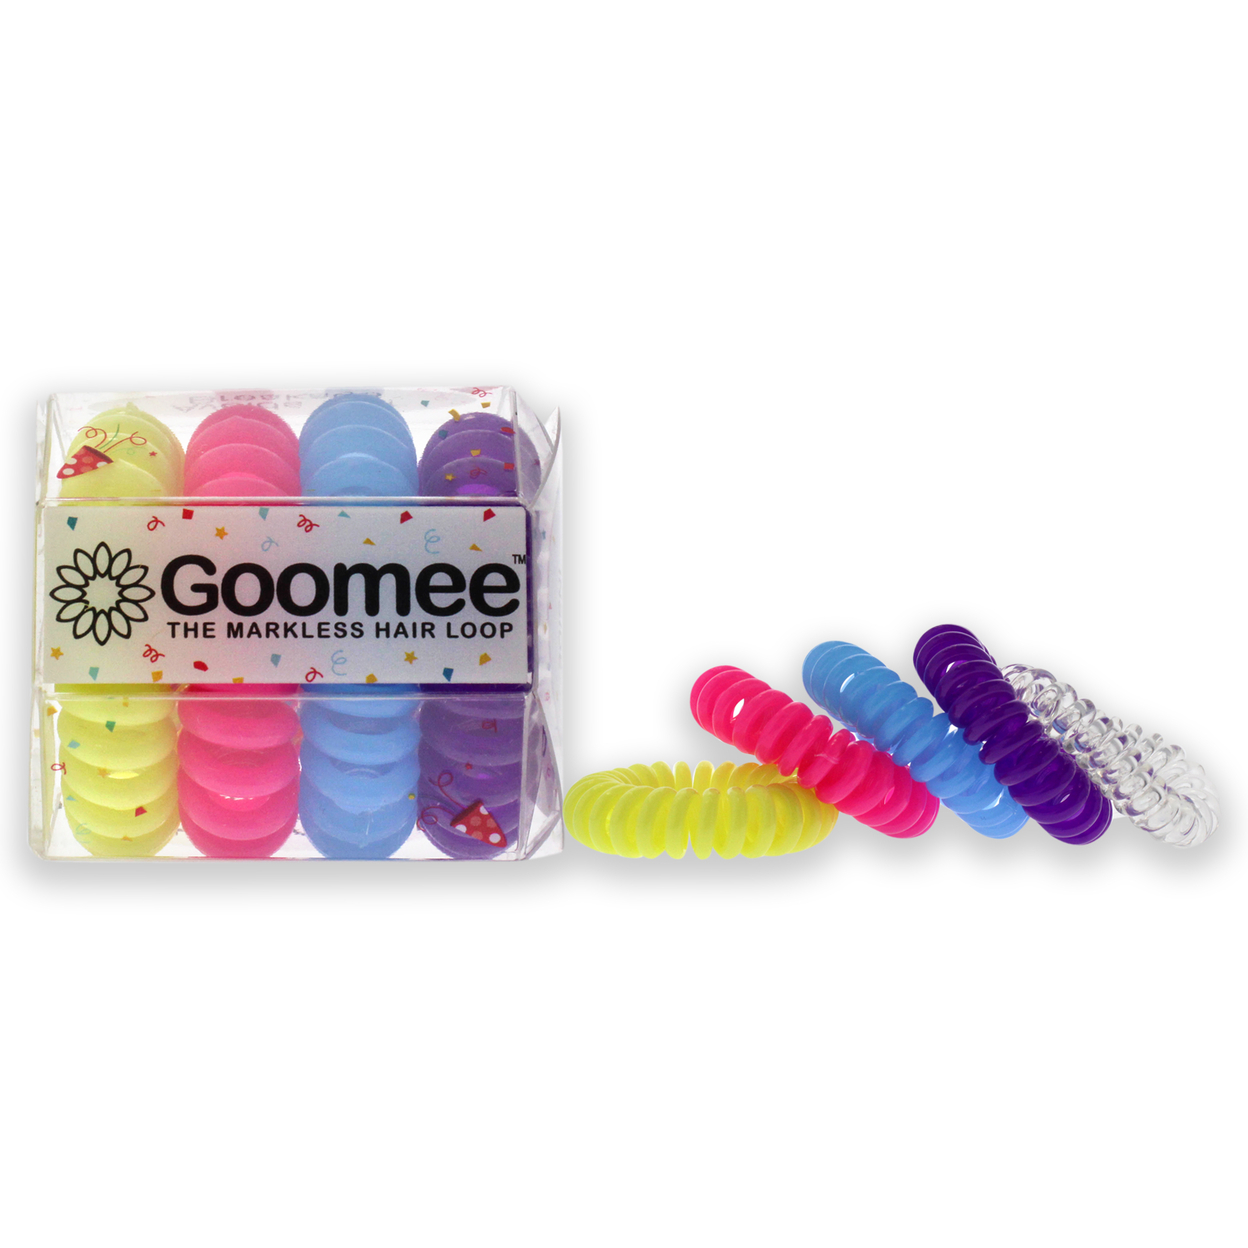 Goomee The Markless Hair Loop Set - Rebel Hair Tie 4 Pc